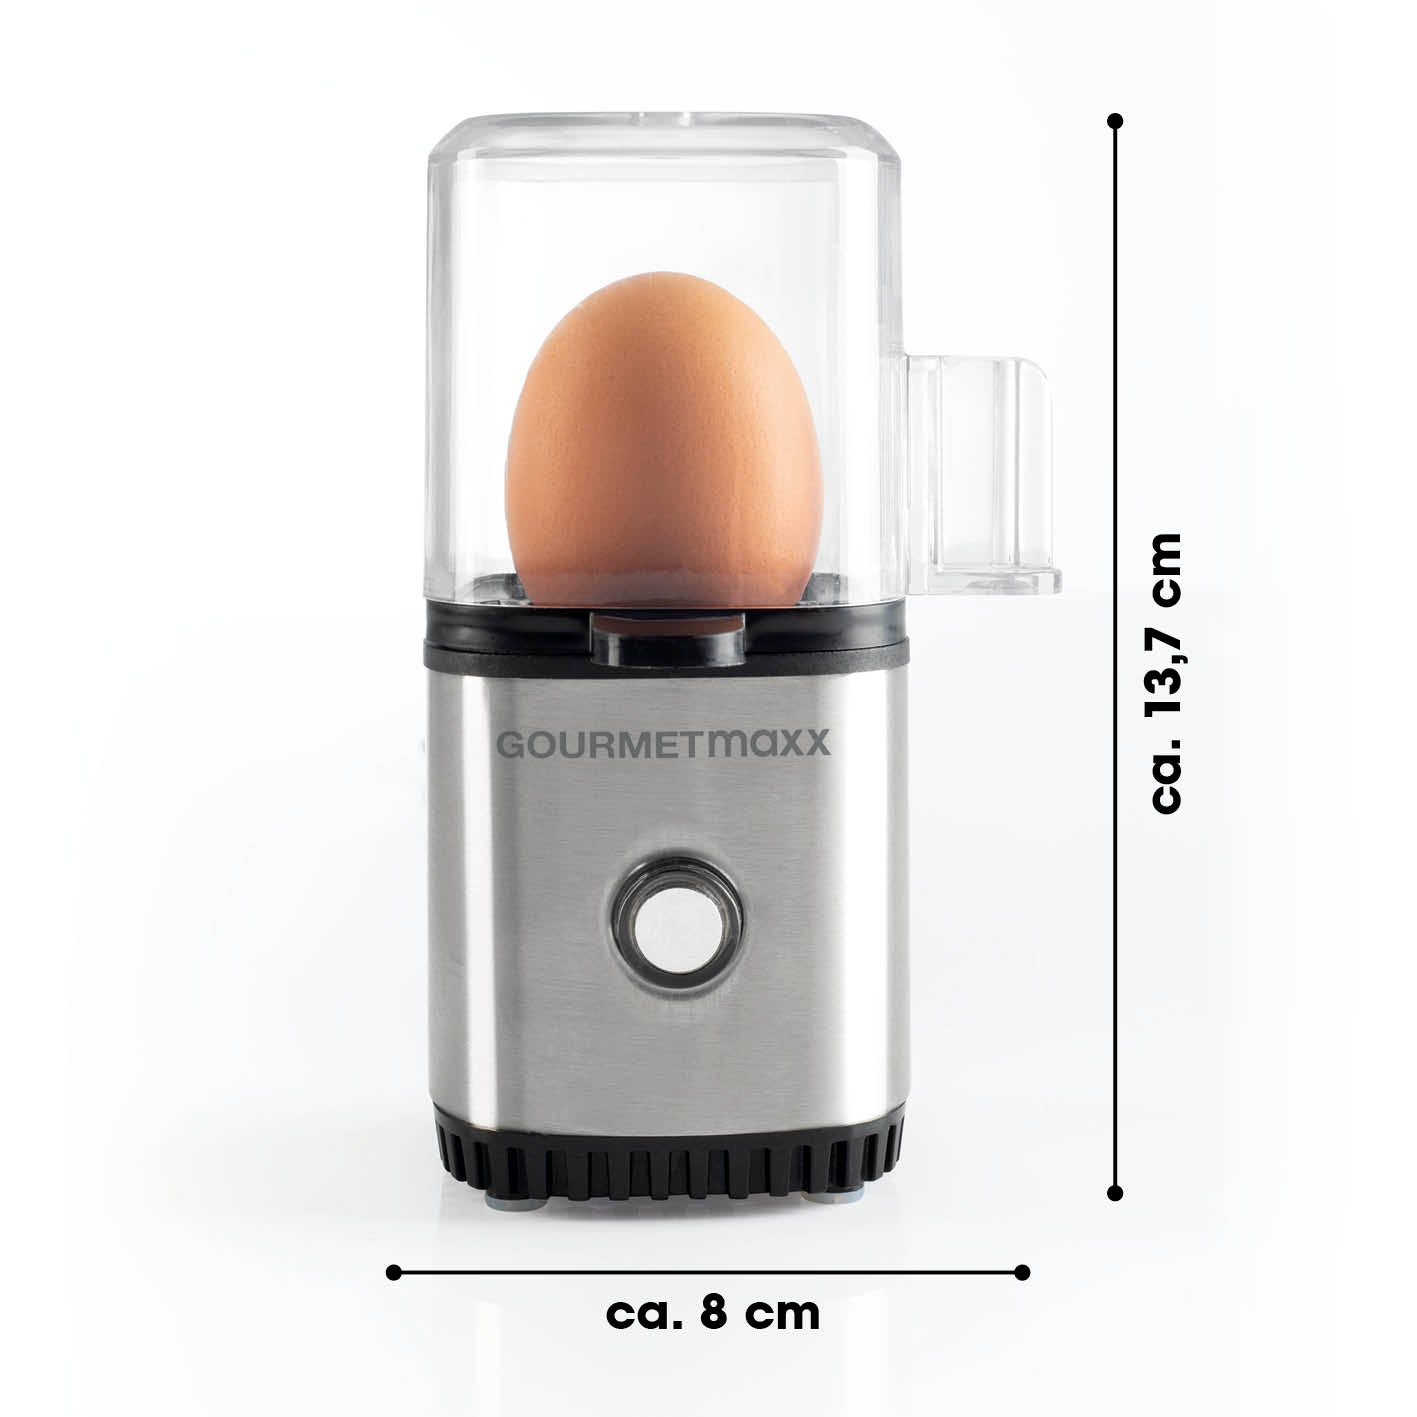 Eierkocher für 1 Ei - Edelstahl/schwarz